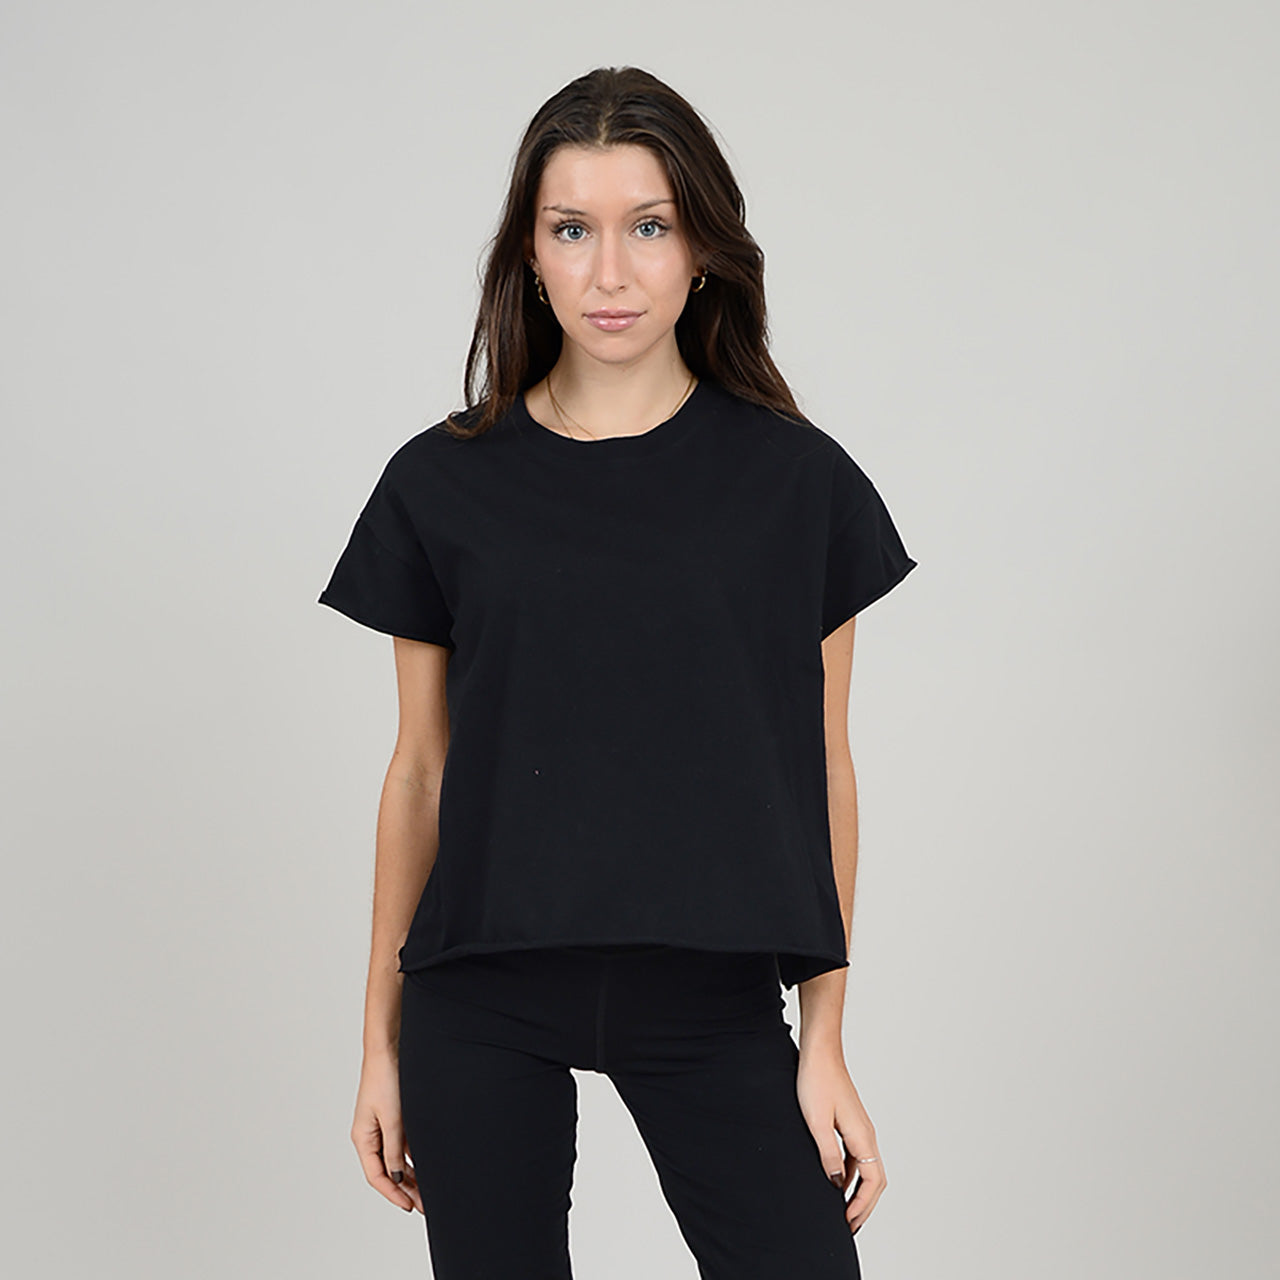 Tara T-Shirt, Black (last one)